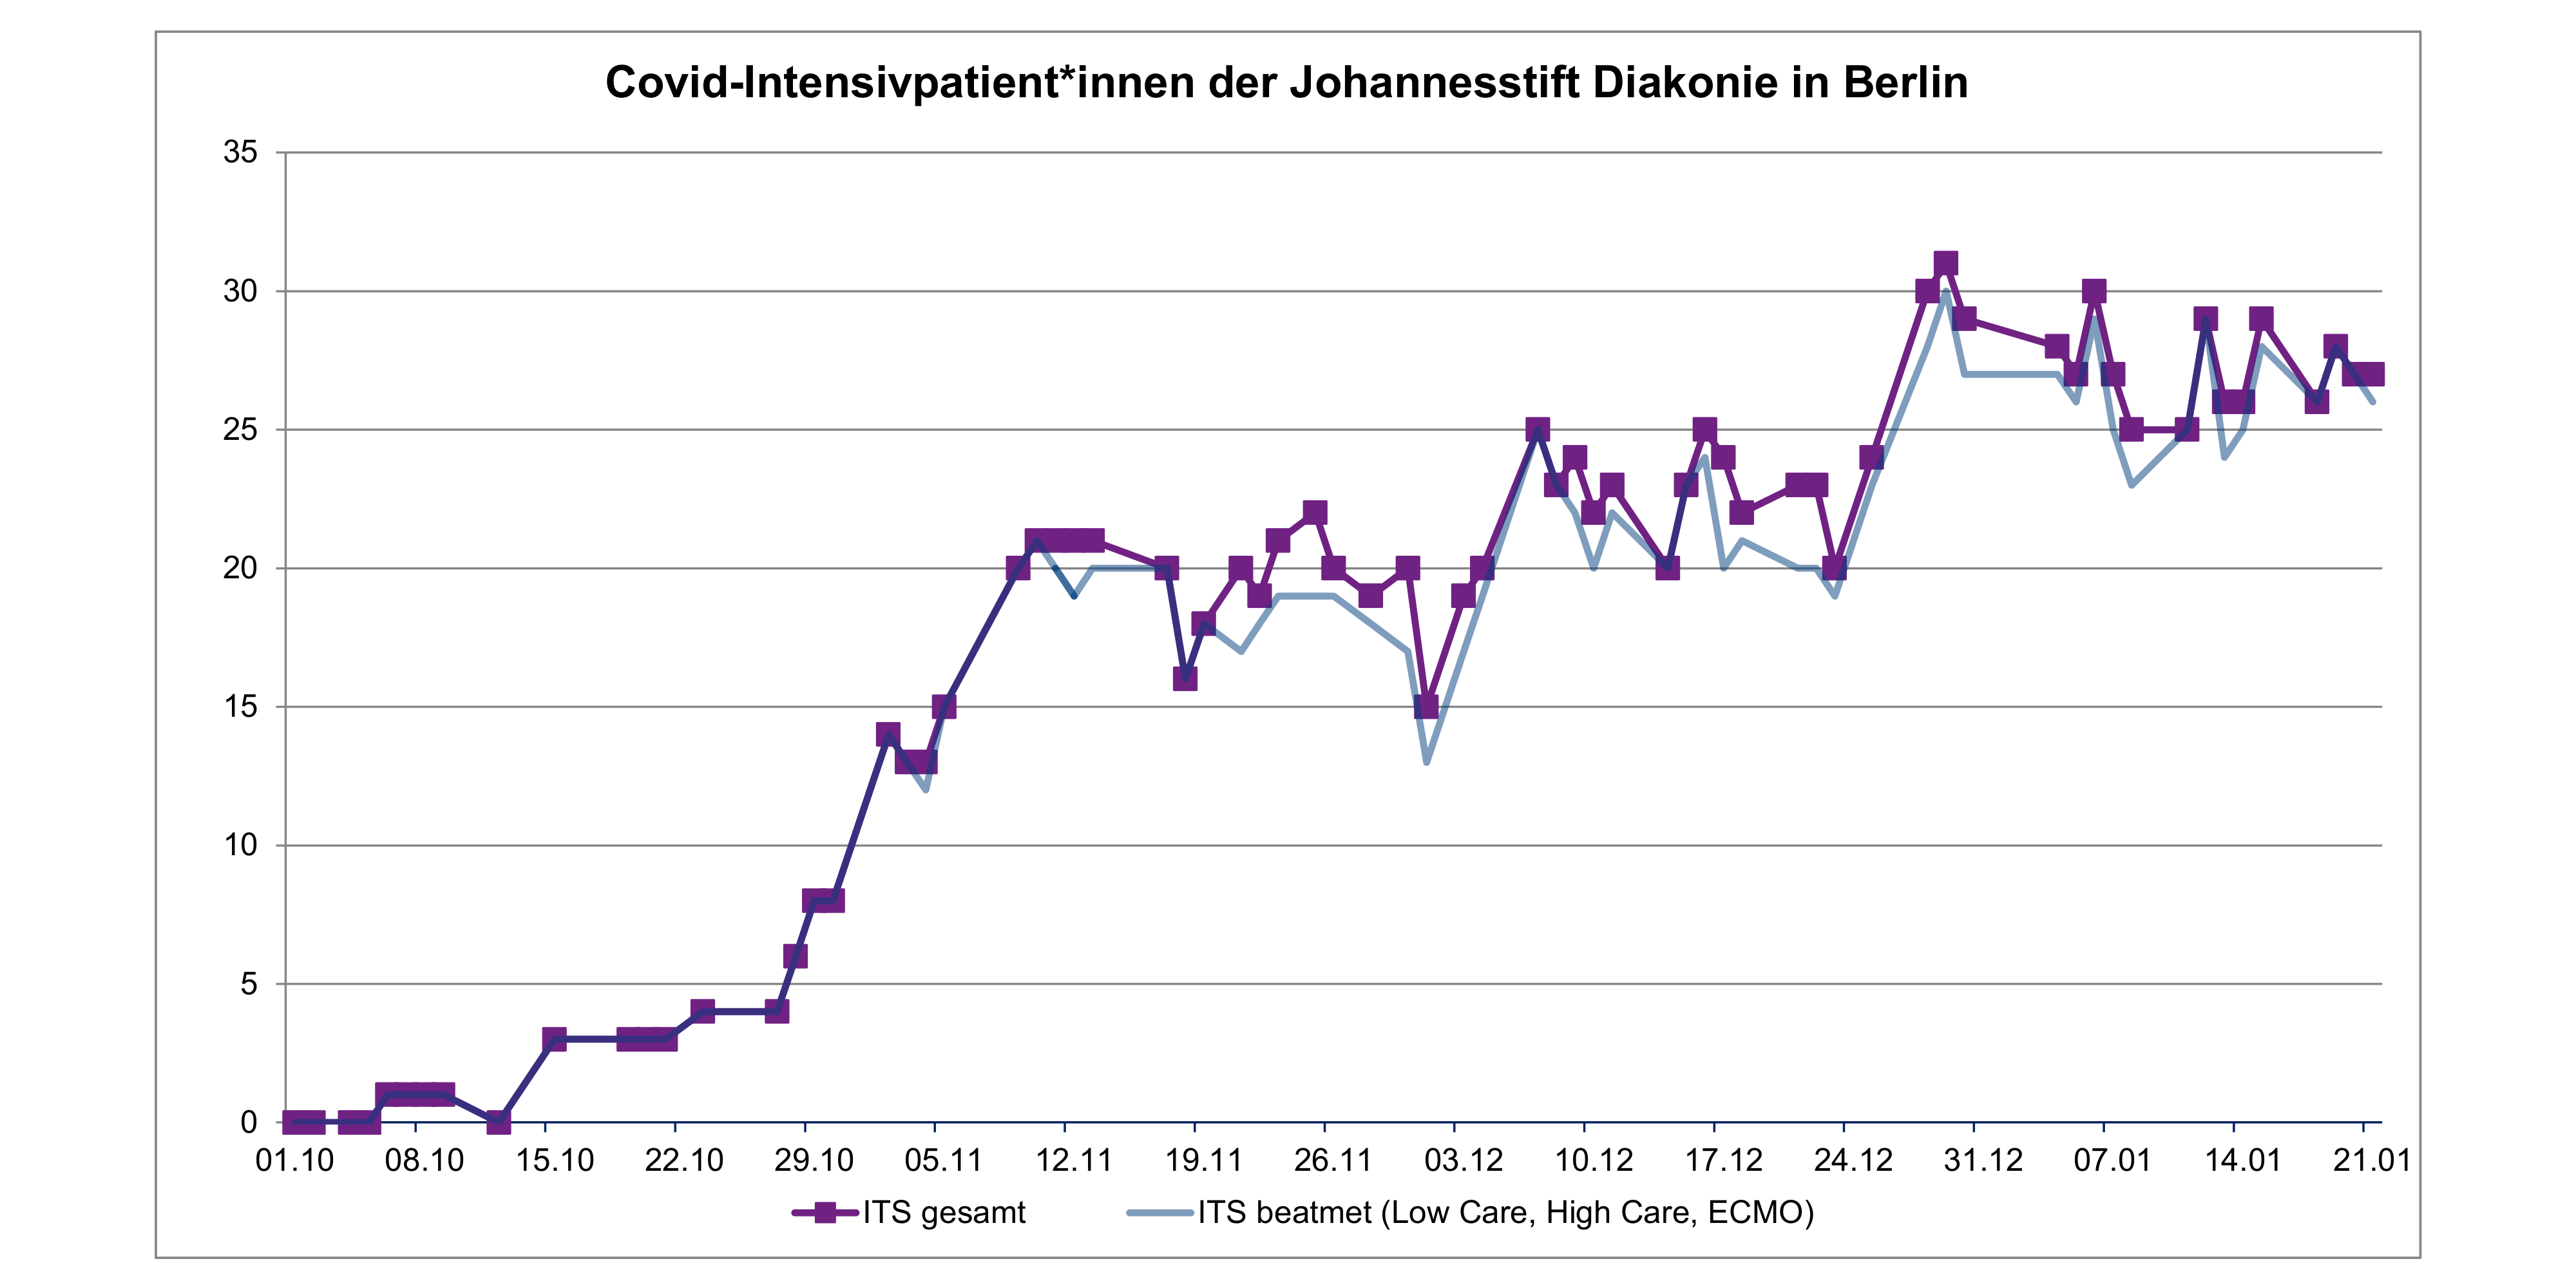 Grafik: Verlauf der Covid-Intensivpatient*innen der Johannesstift Diakonie in Berlin (gesamt und beatmet)